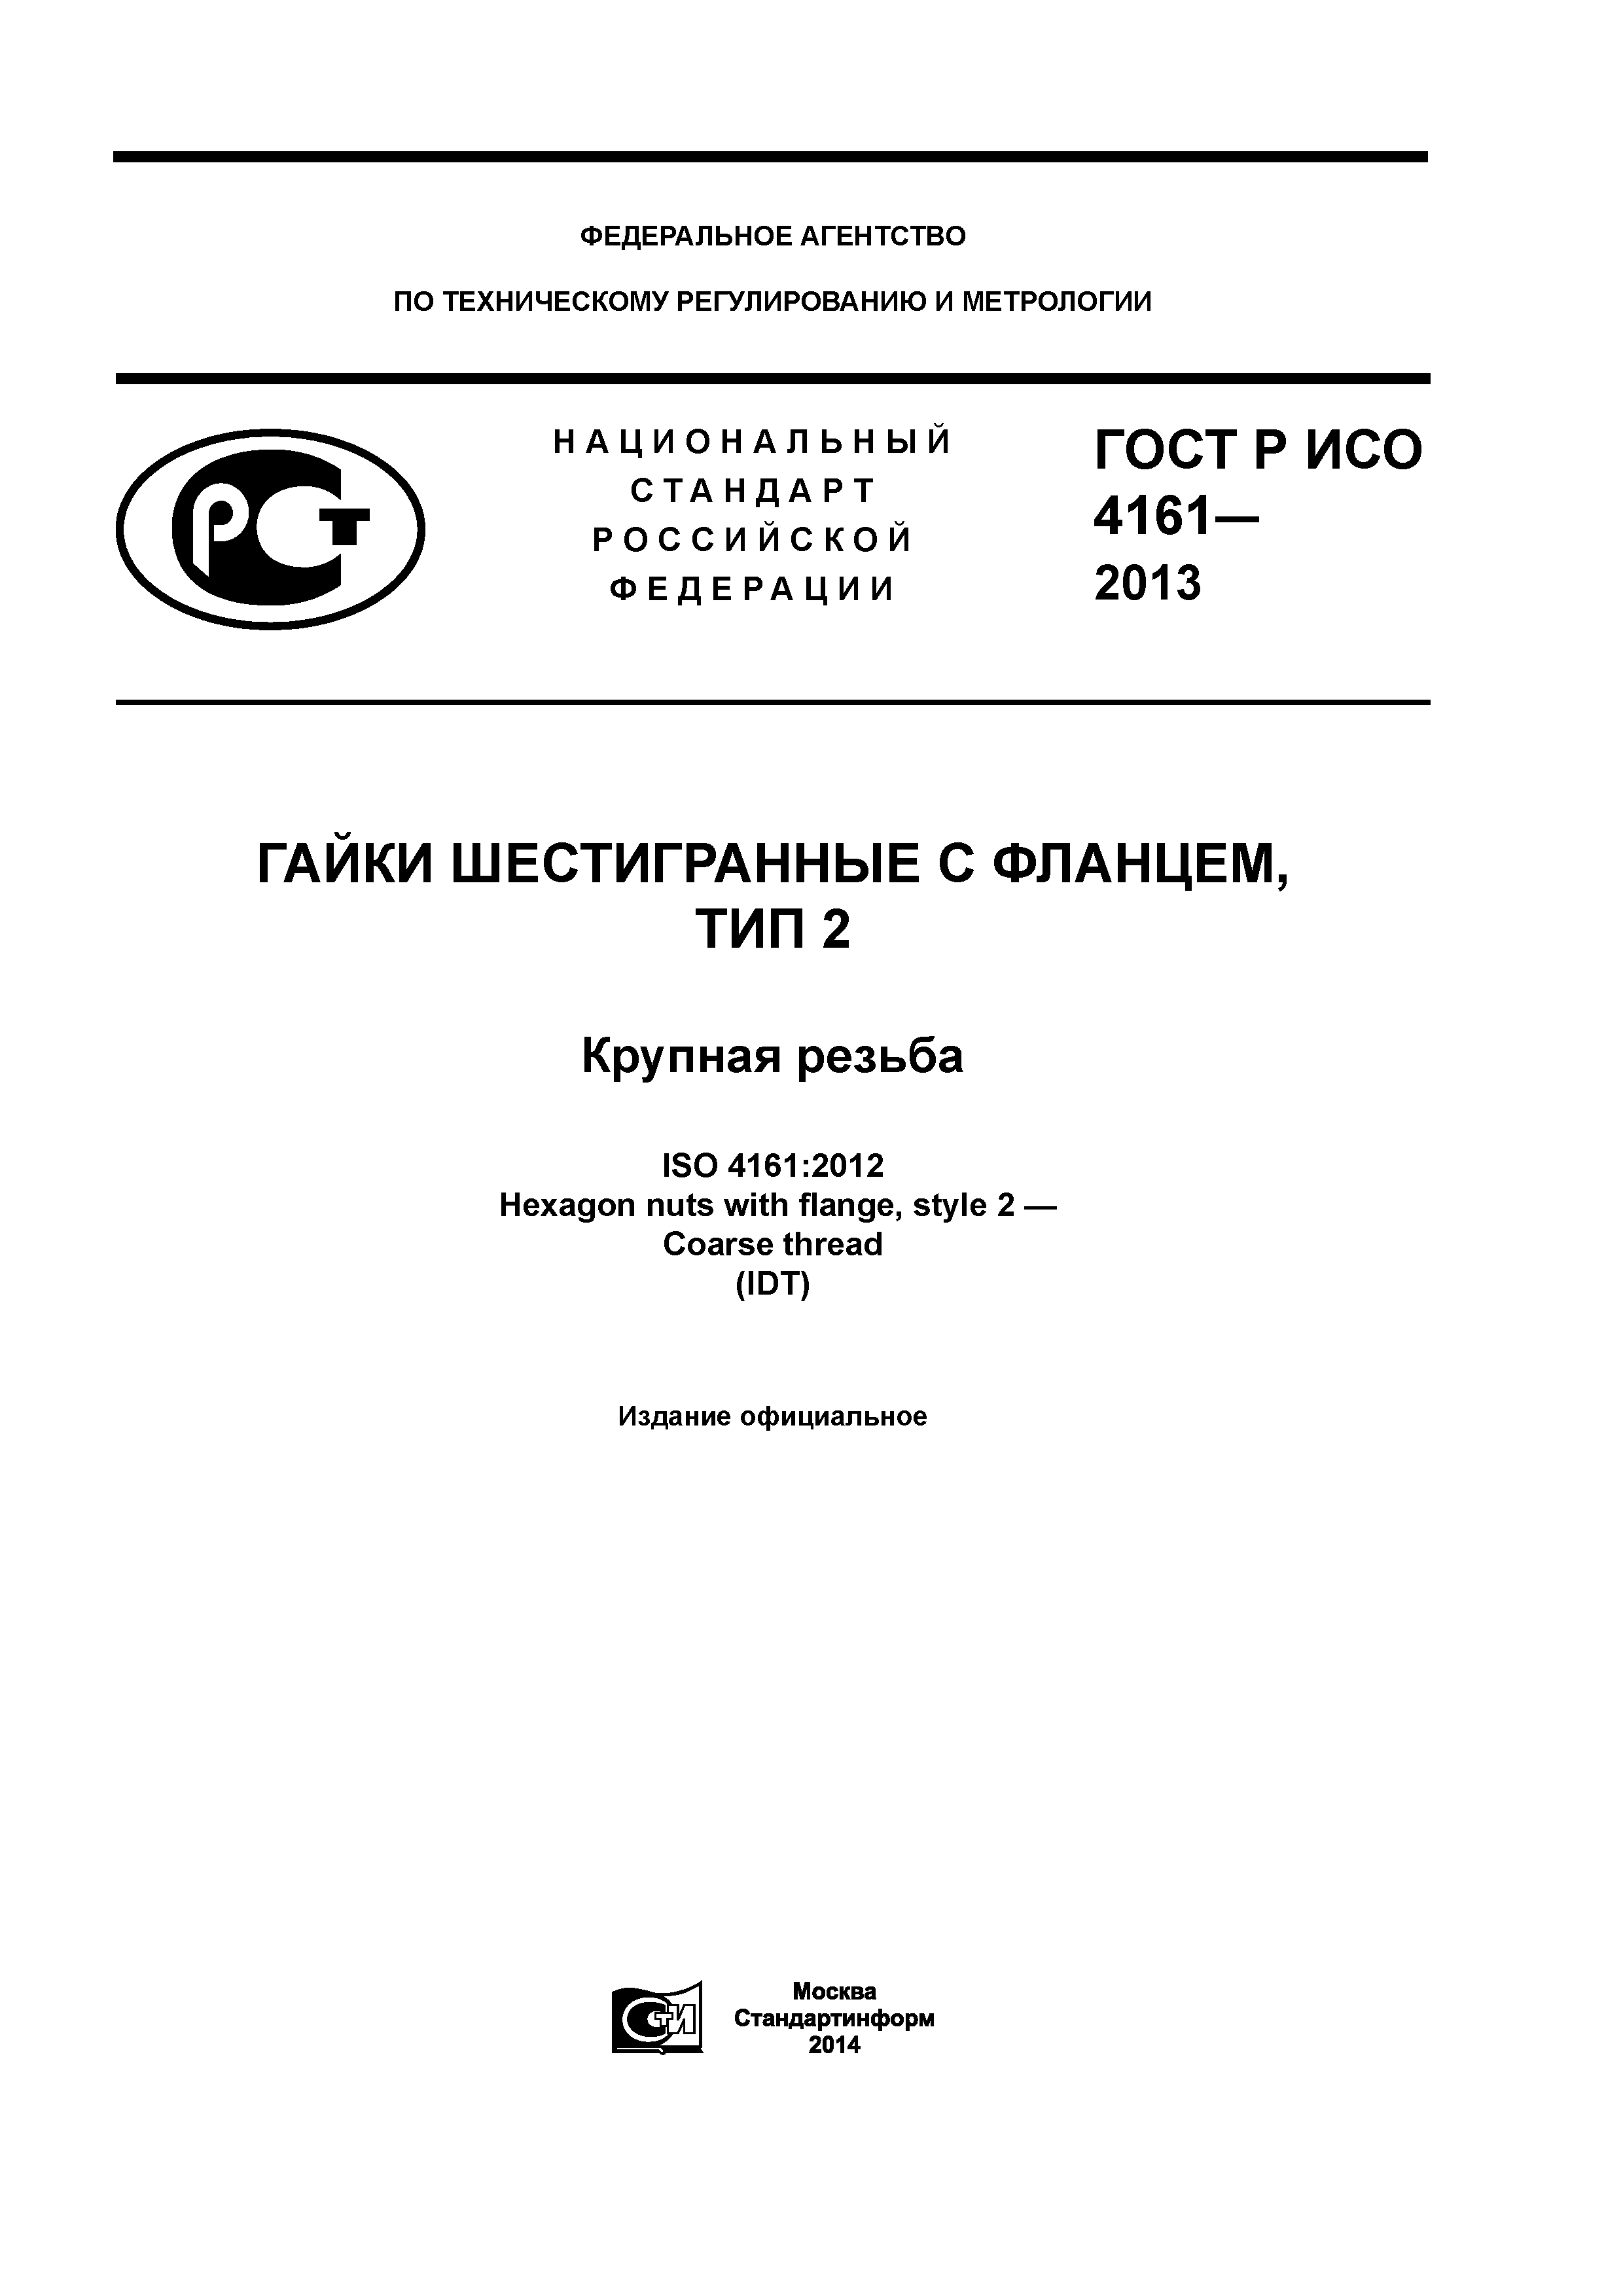 ГОСТ Р ИСО 4161-2013